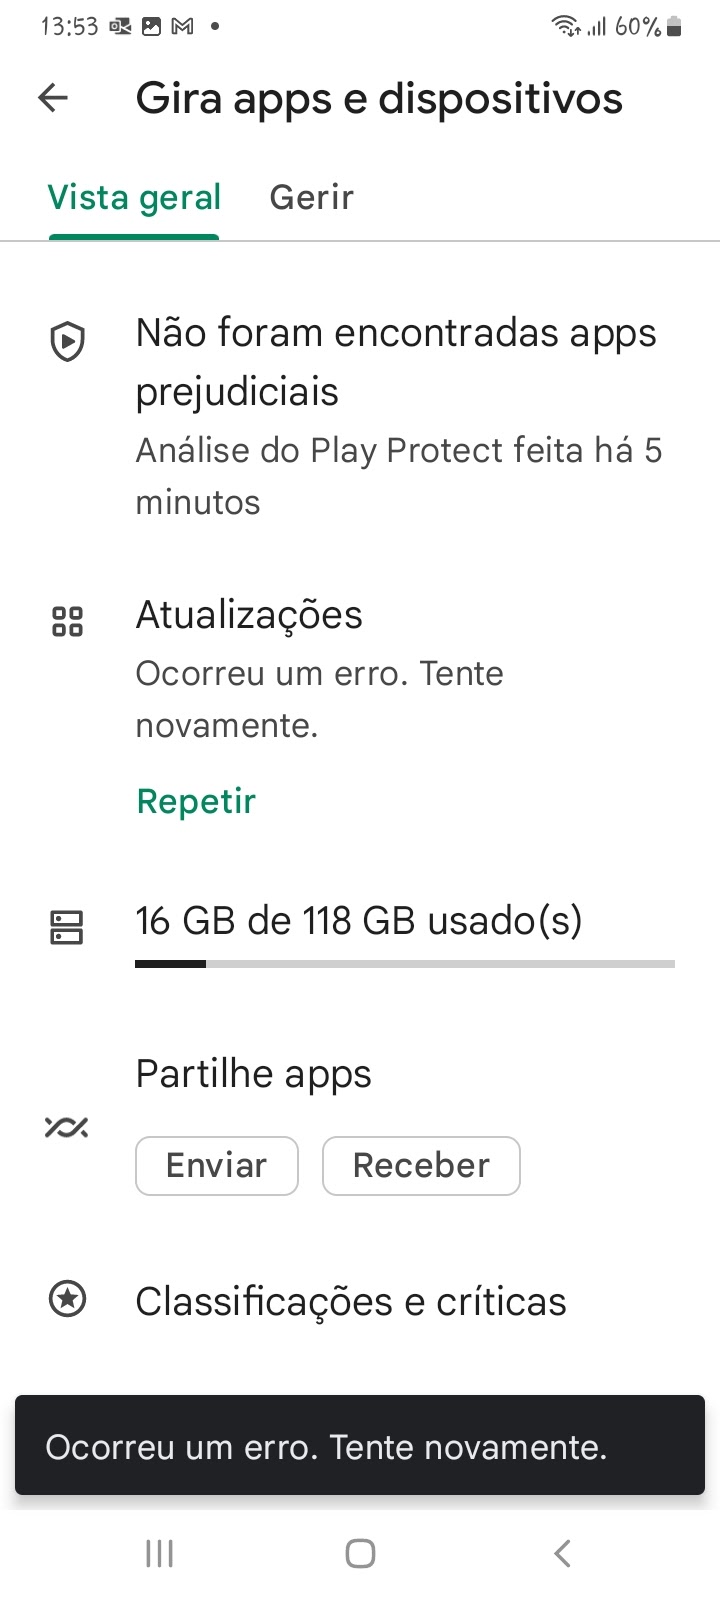 Não consigo instalar/atualiza apps e agora? - Comunidade Google Play